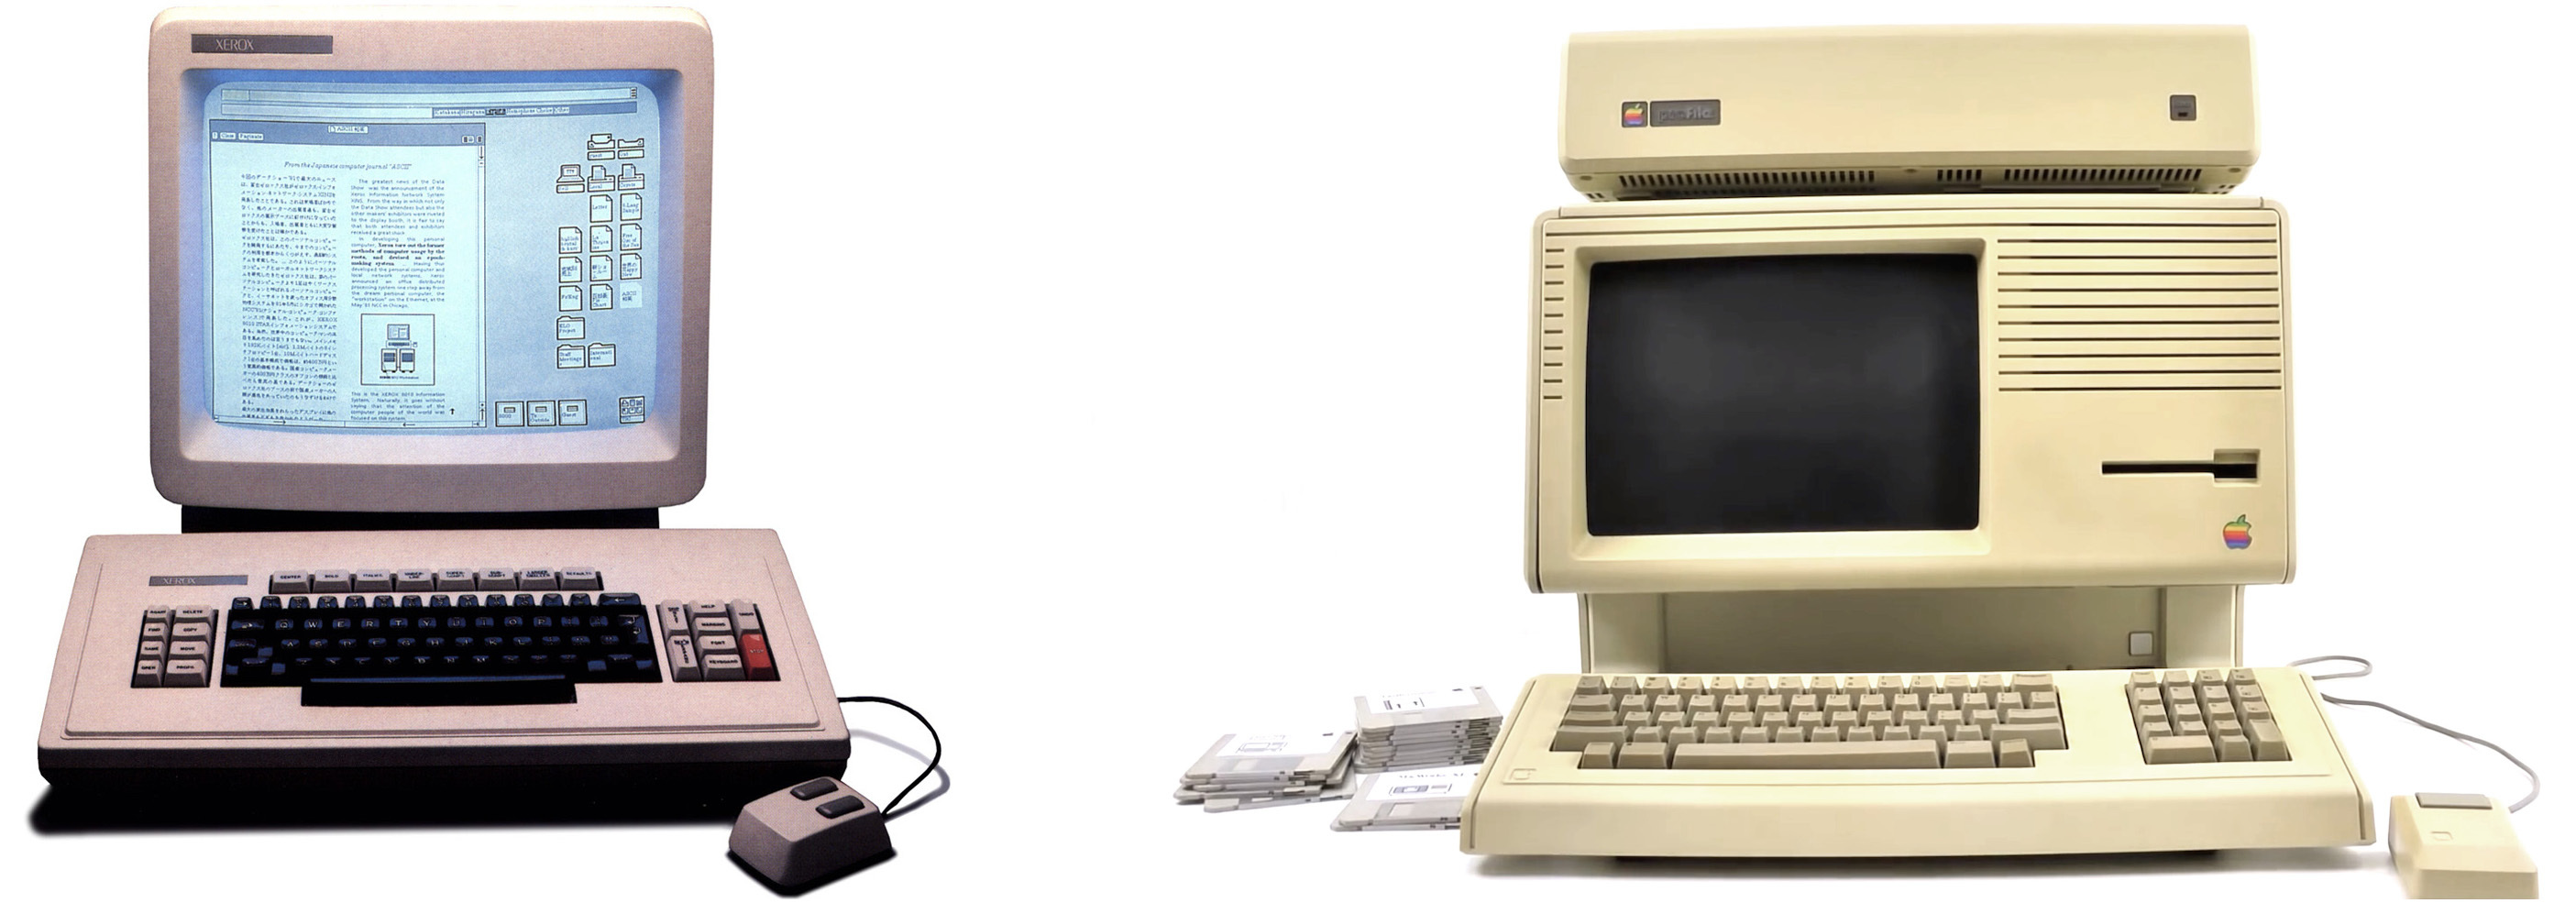 Ein- und Ausgabegeräte des Xerox 8010 Star Information System (links) und Apple Lisa mit zusätzlicher externer Festplatte (rechts) – Bilder: Xerox Corporation via digibarn.com, alker33 on Youtube (CC-BY-3.0)